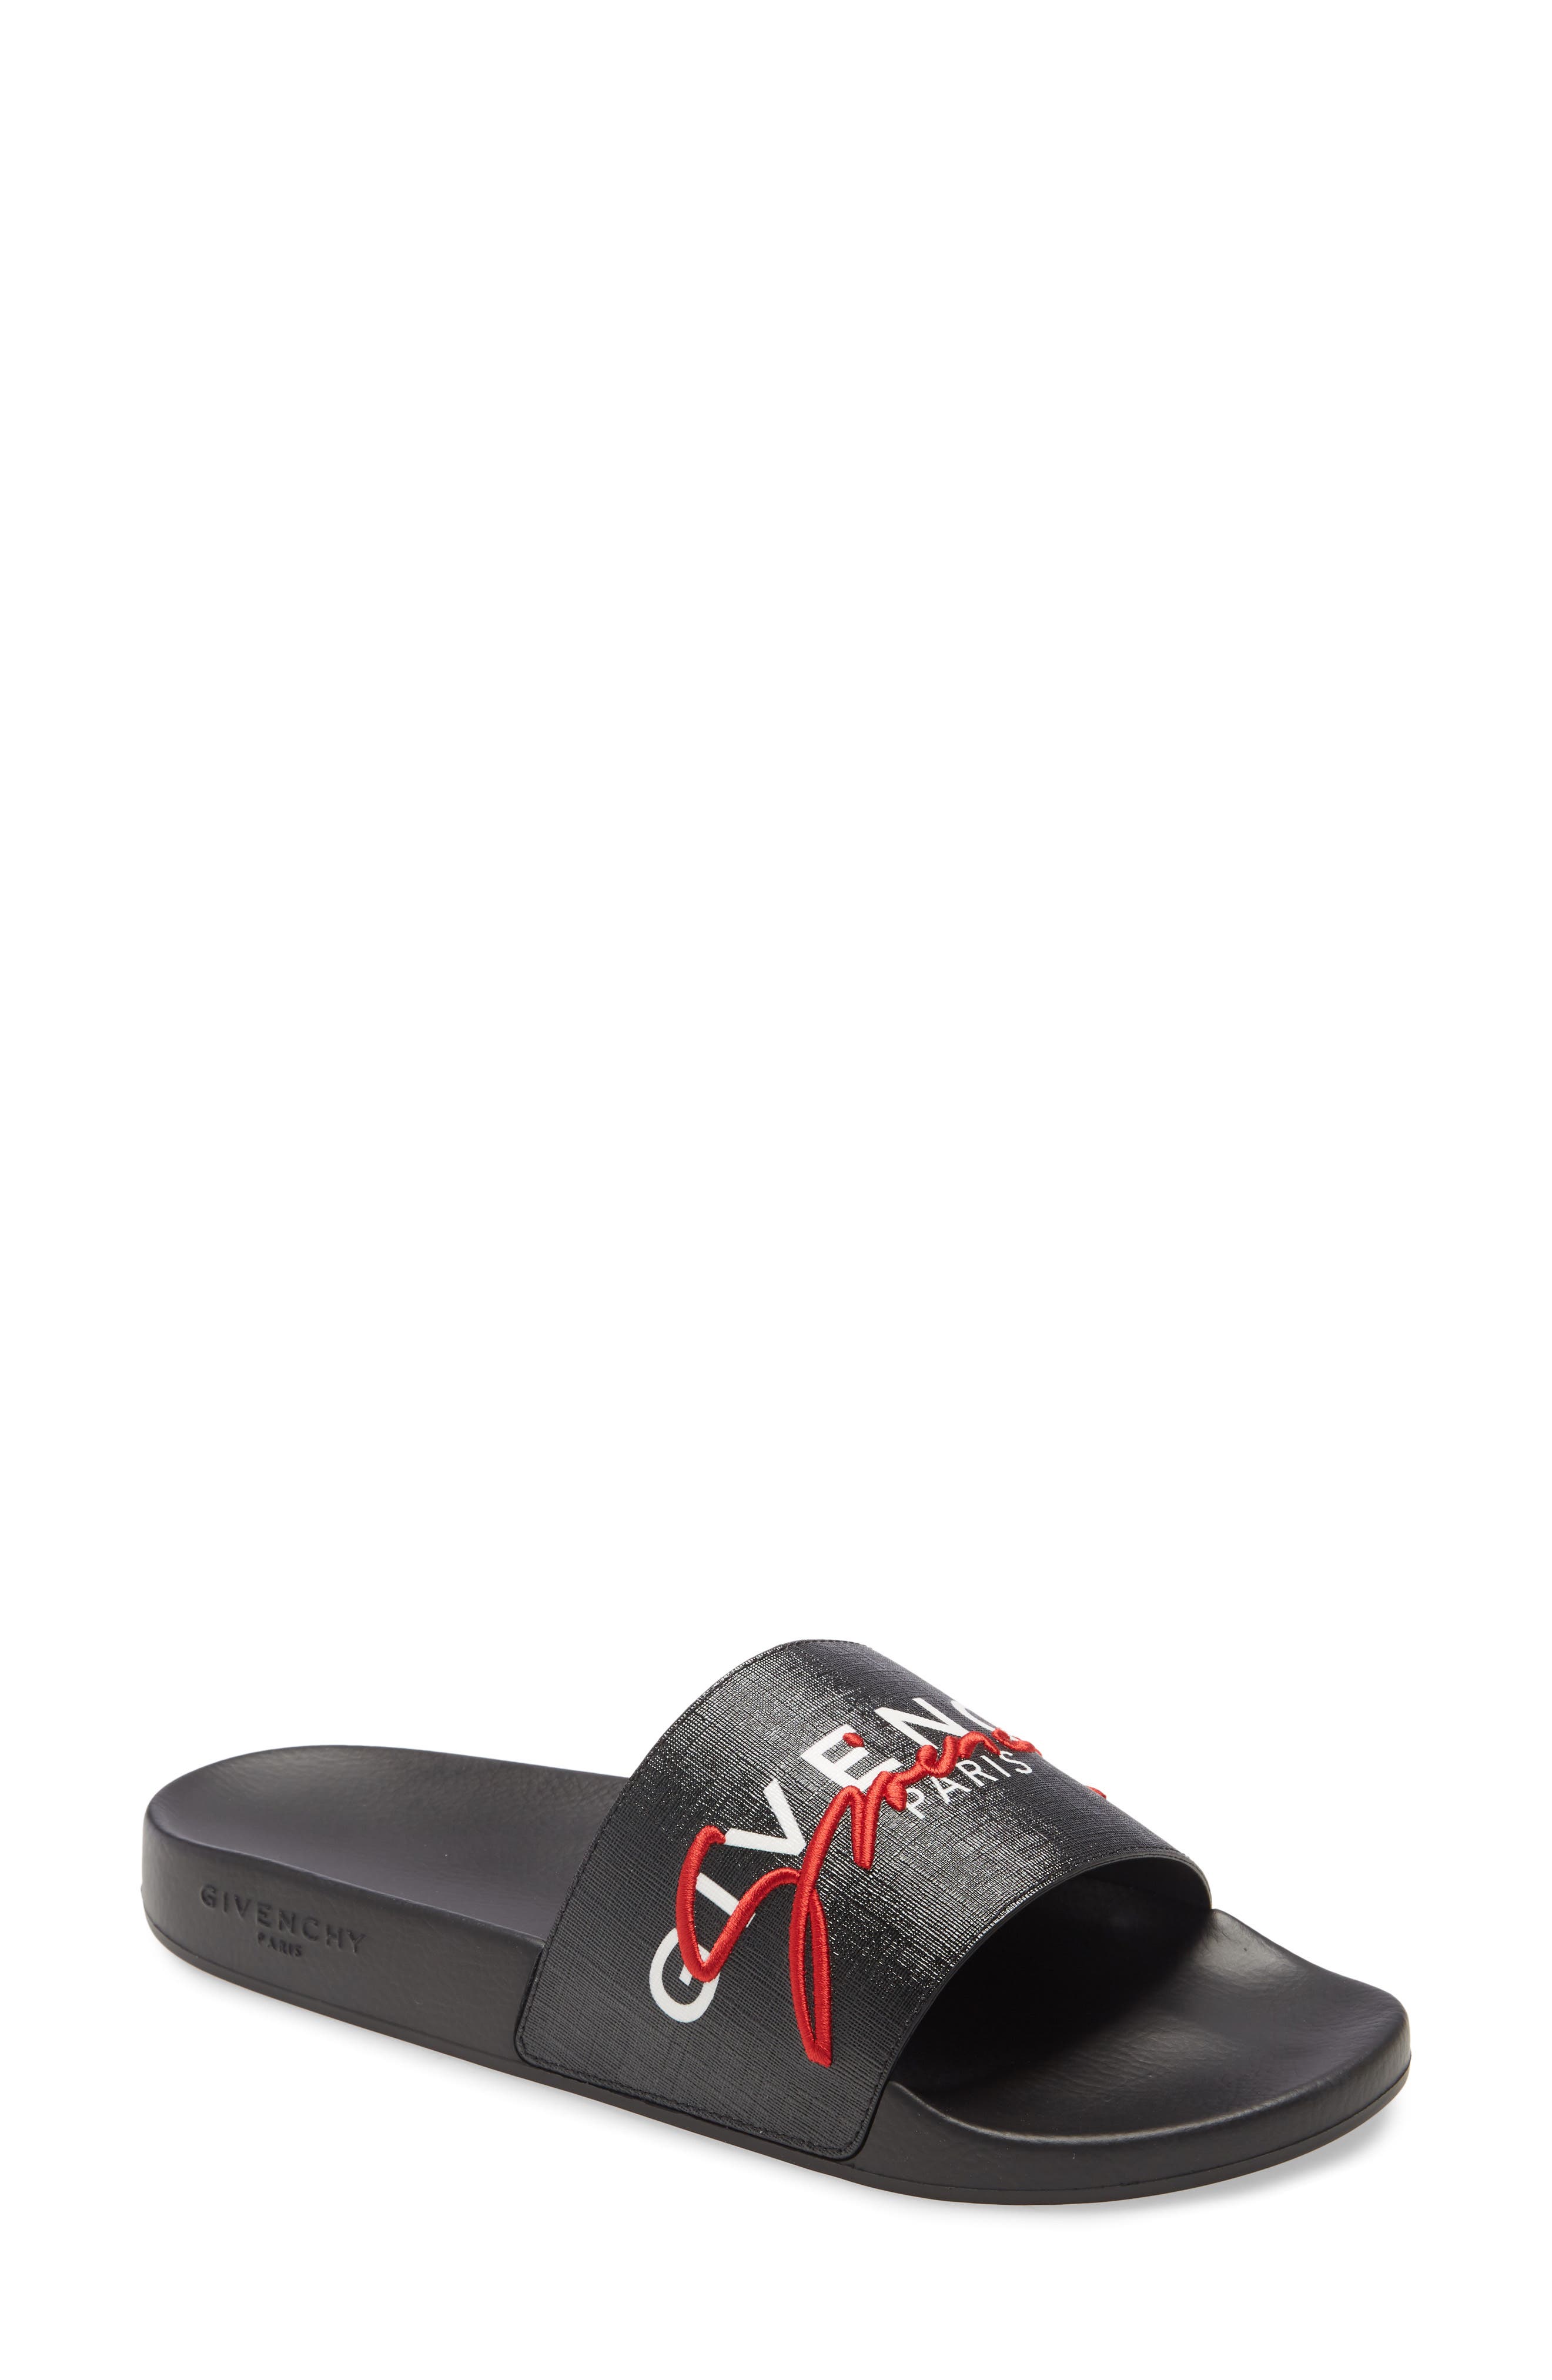 Givenchy Designer Sandals \u0026 Slides 